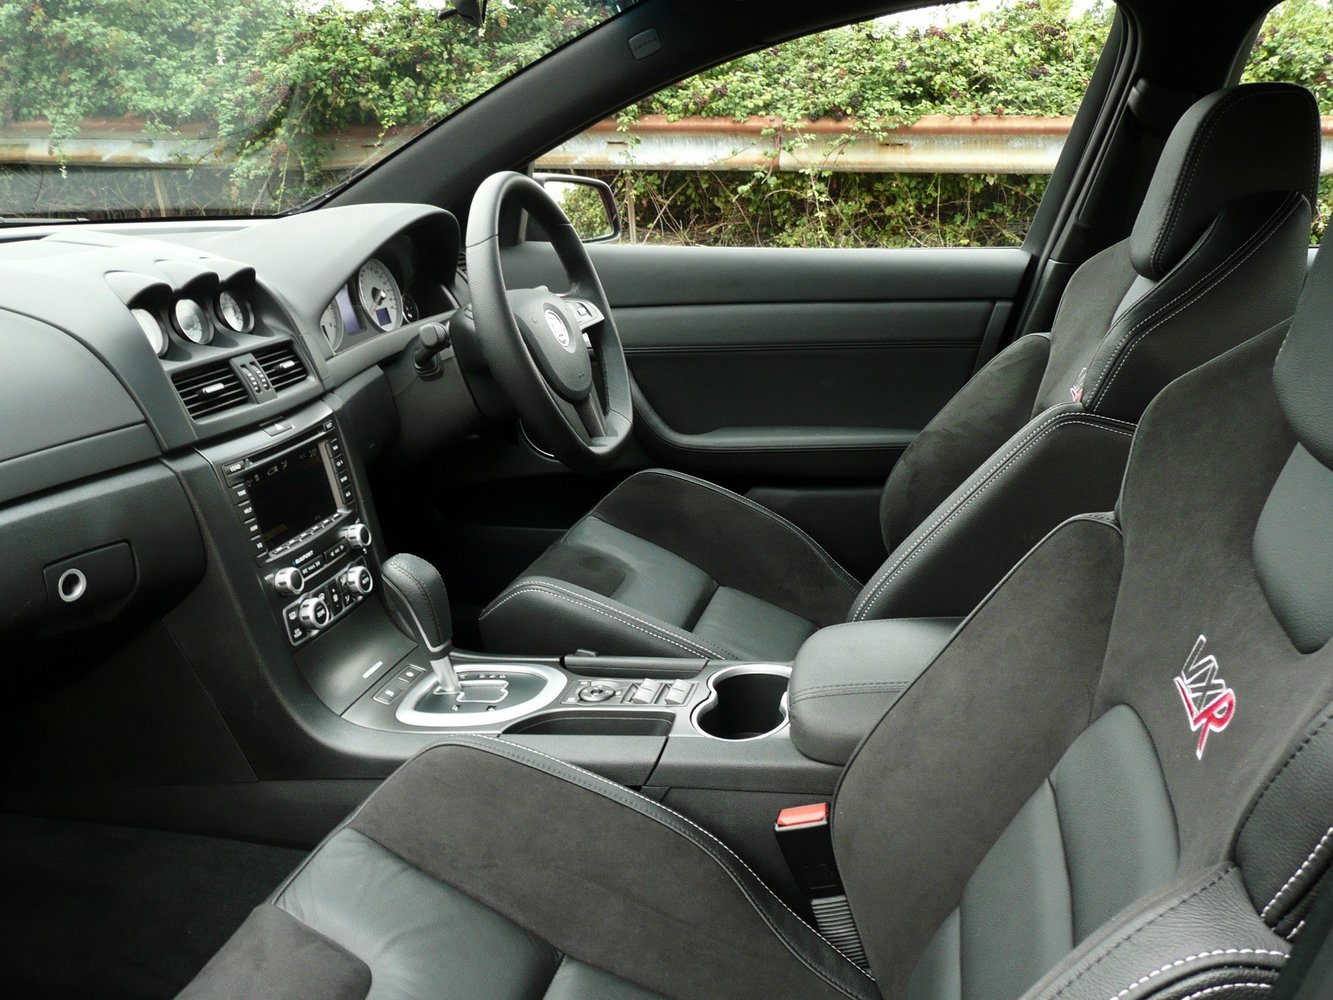 седан Vauxhall VXR8 2007 - 2009г выпуска модификация 6.2 AT (431 л.с.)